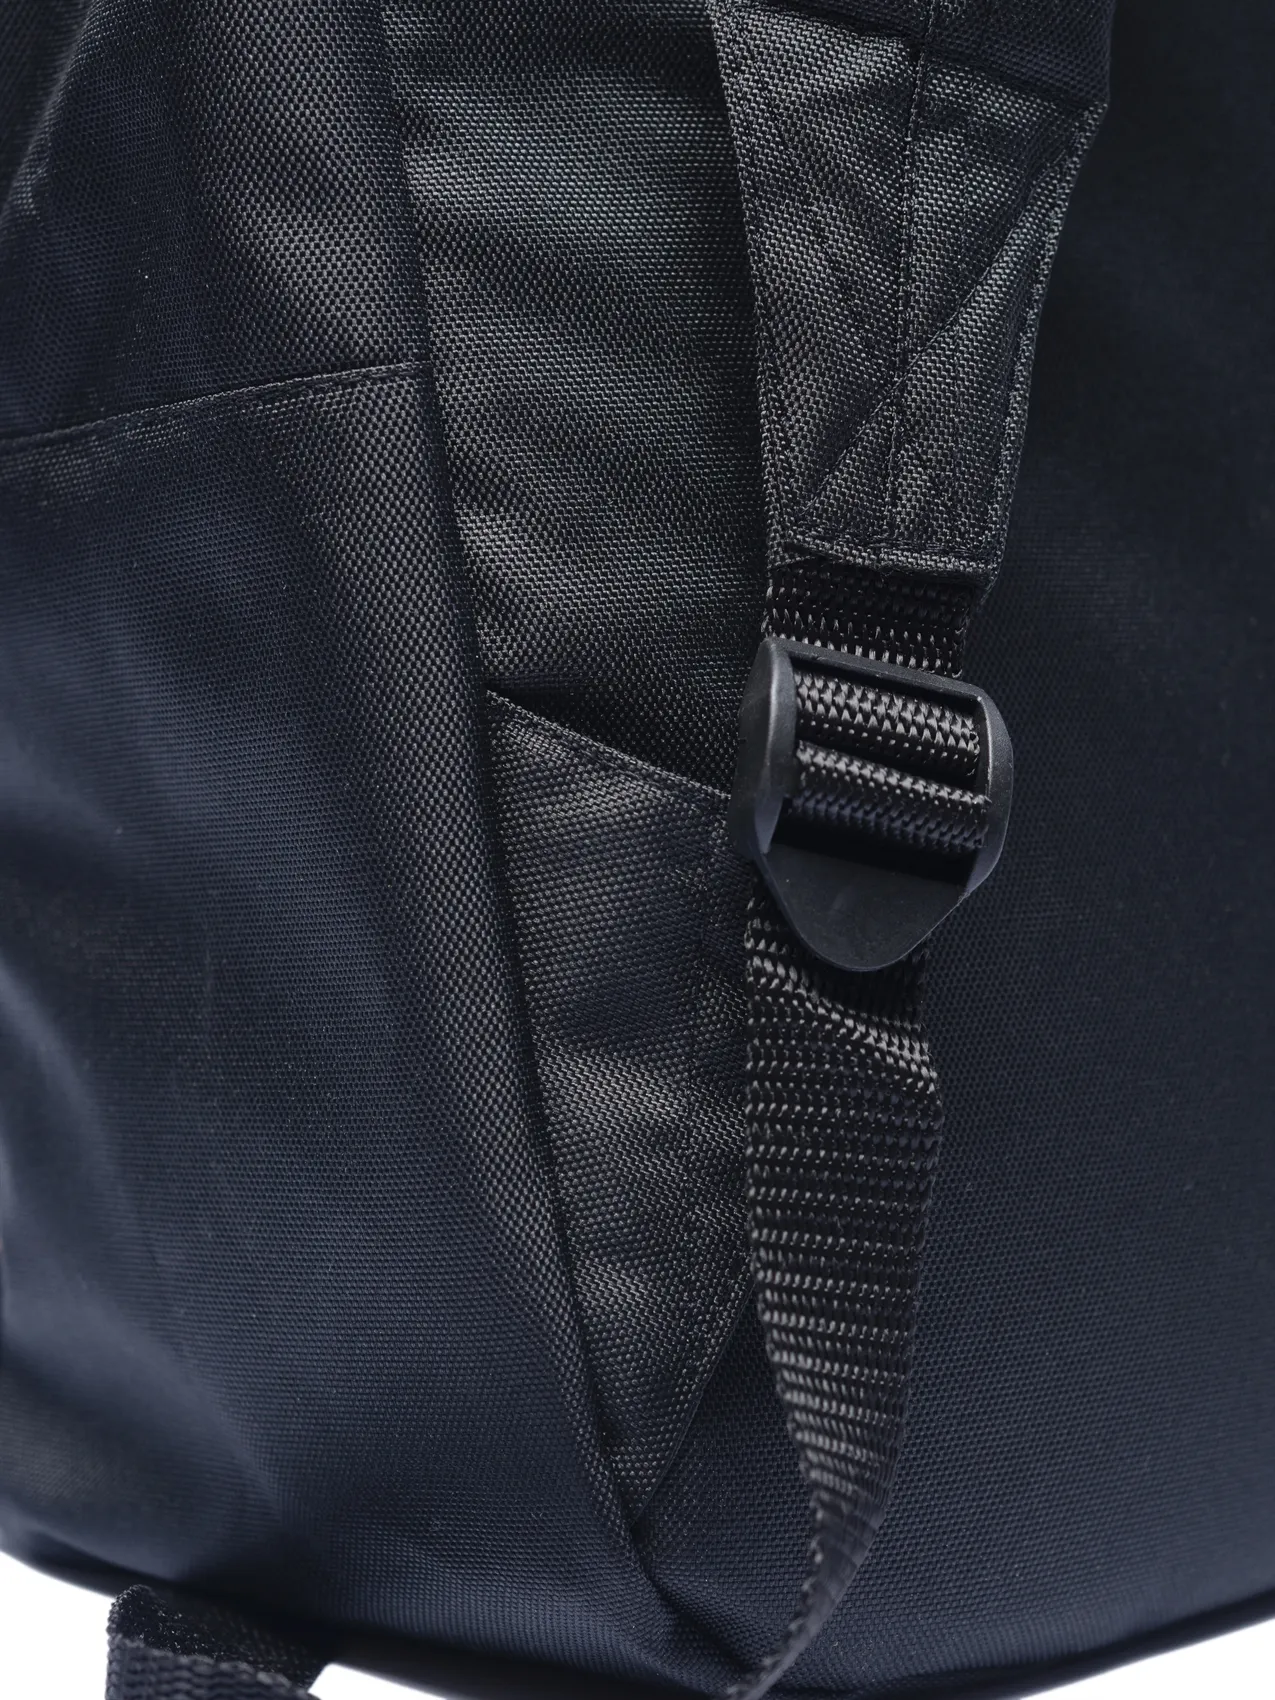 Рюкзак Oldy принт карман (черный, череп)